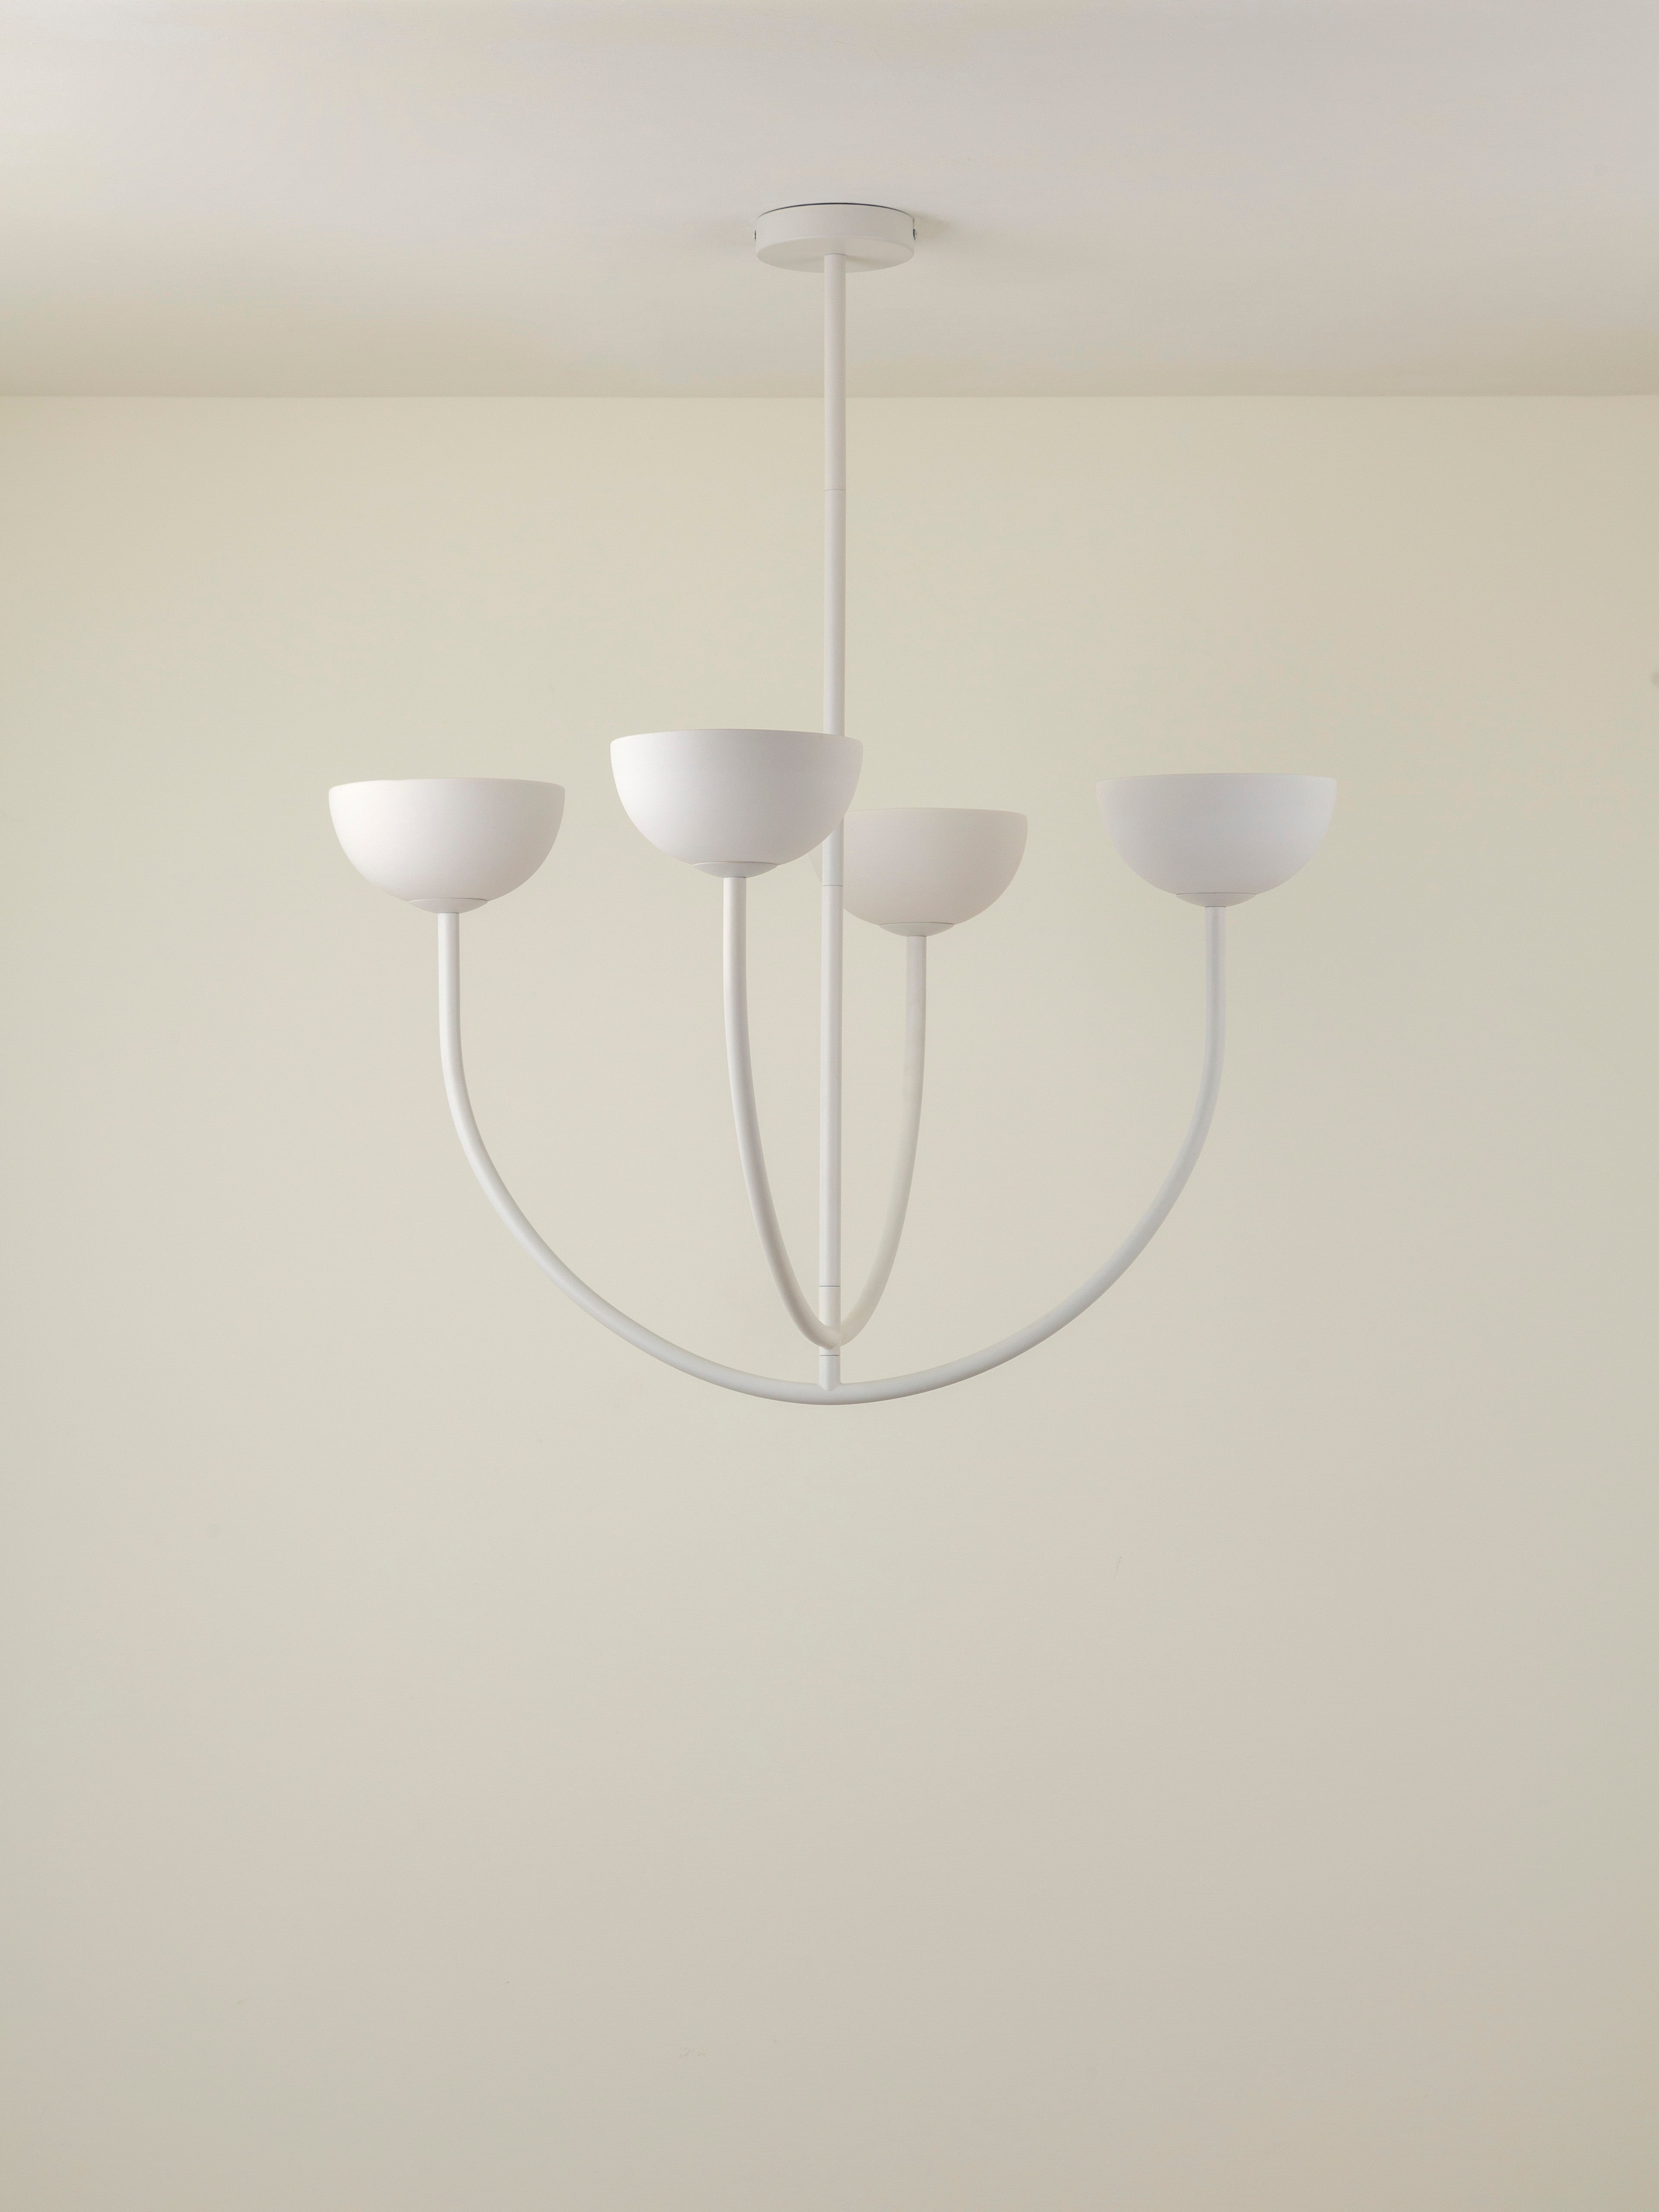 Ruzo - 4 light matt warm white and white porcelain ceiling pendant | Chandelier | Lights & Lamps | UK | Modern Affordable Designer Lighting